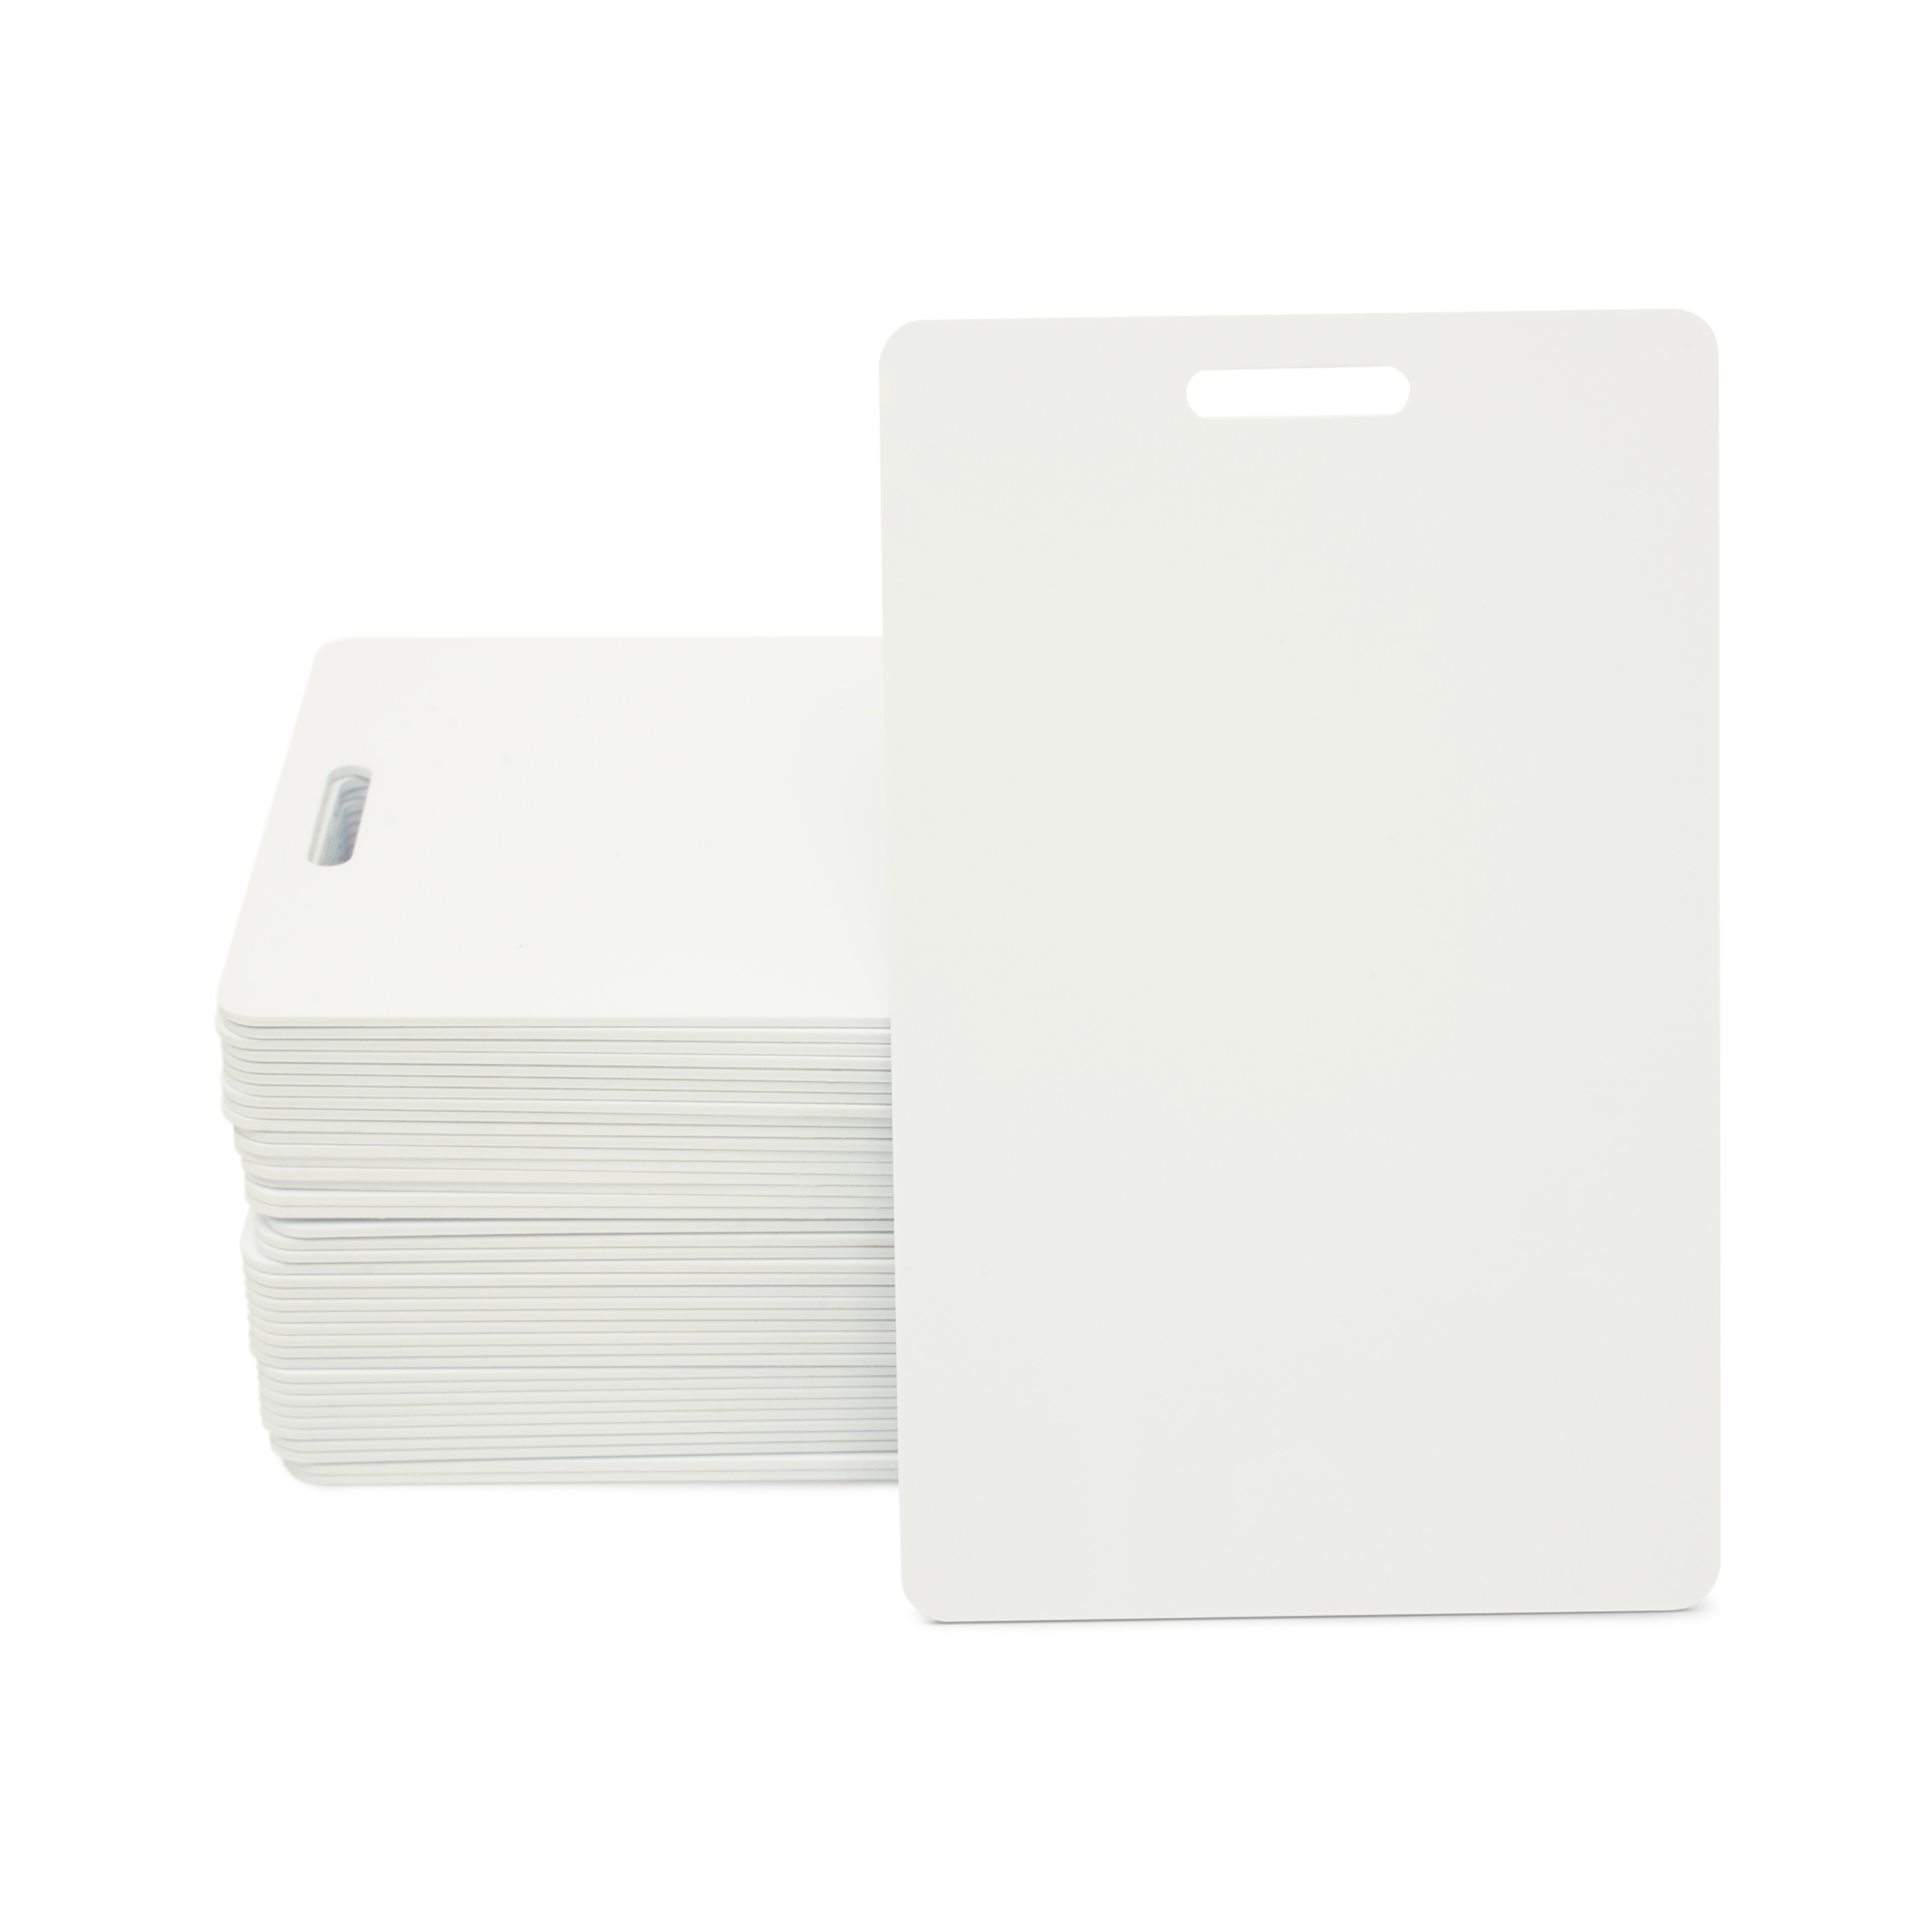 NFC Karte PVC - 85,6 x 54 mm - NTAG216 - 924 Byte - weiß - Hochformat mit Schlitz